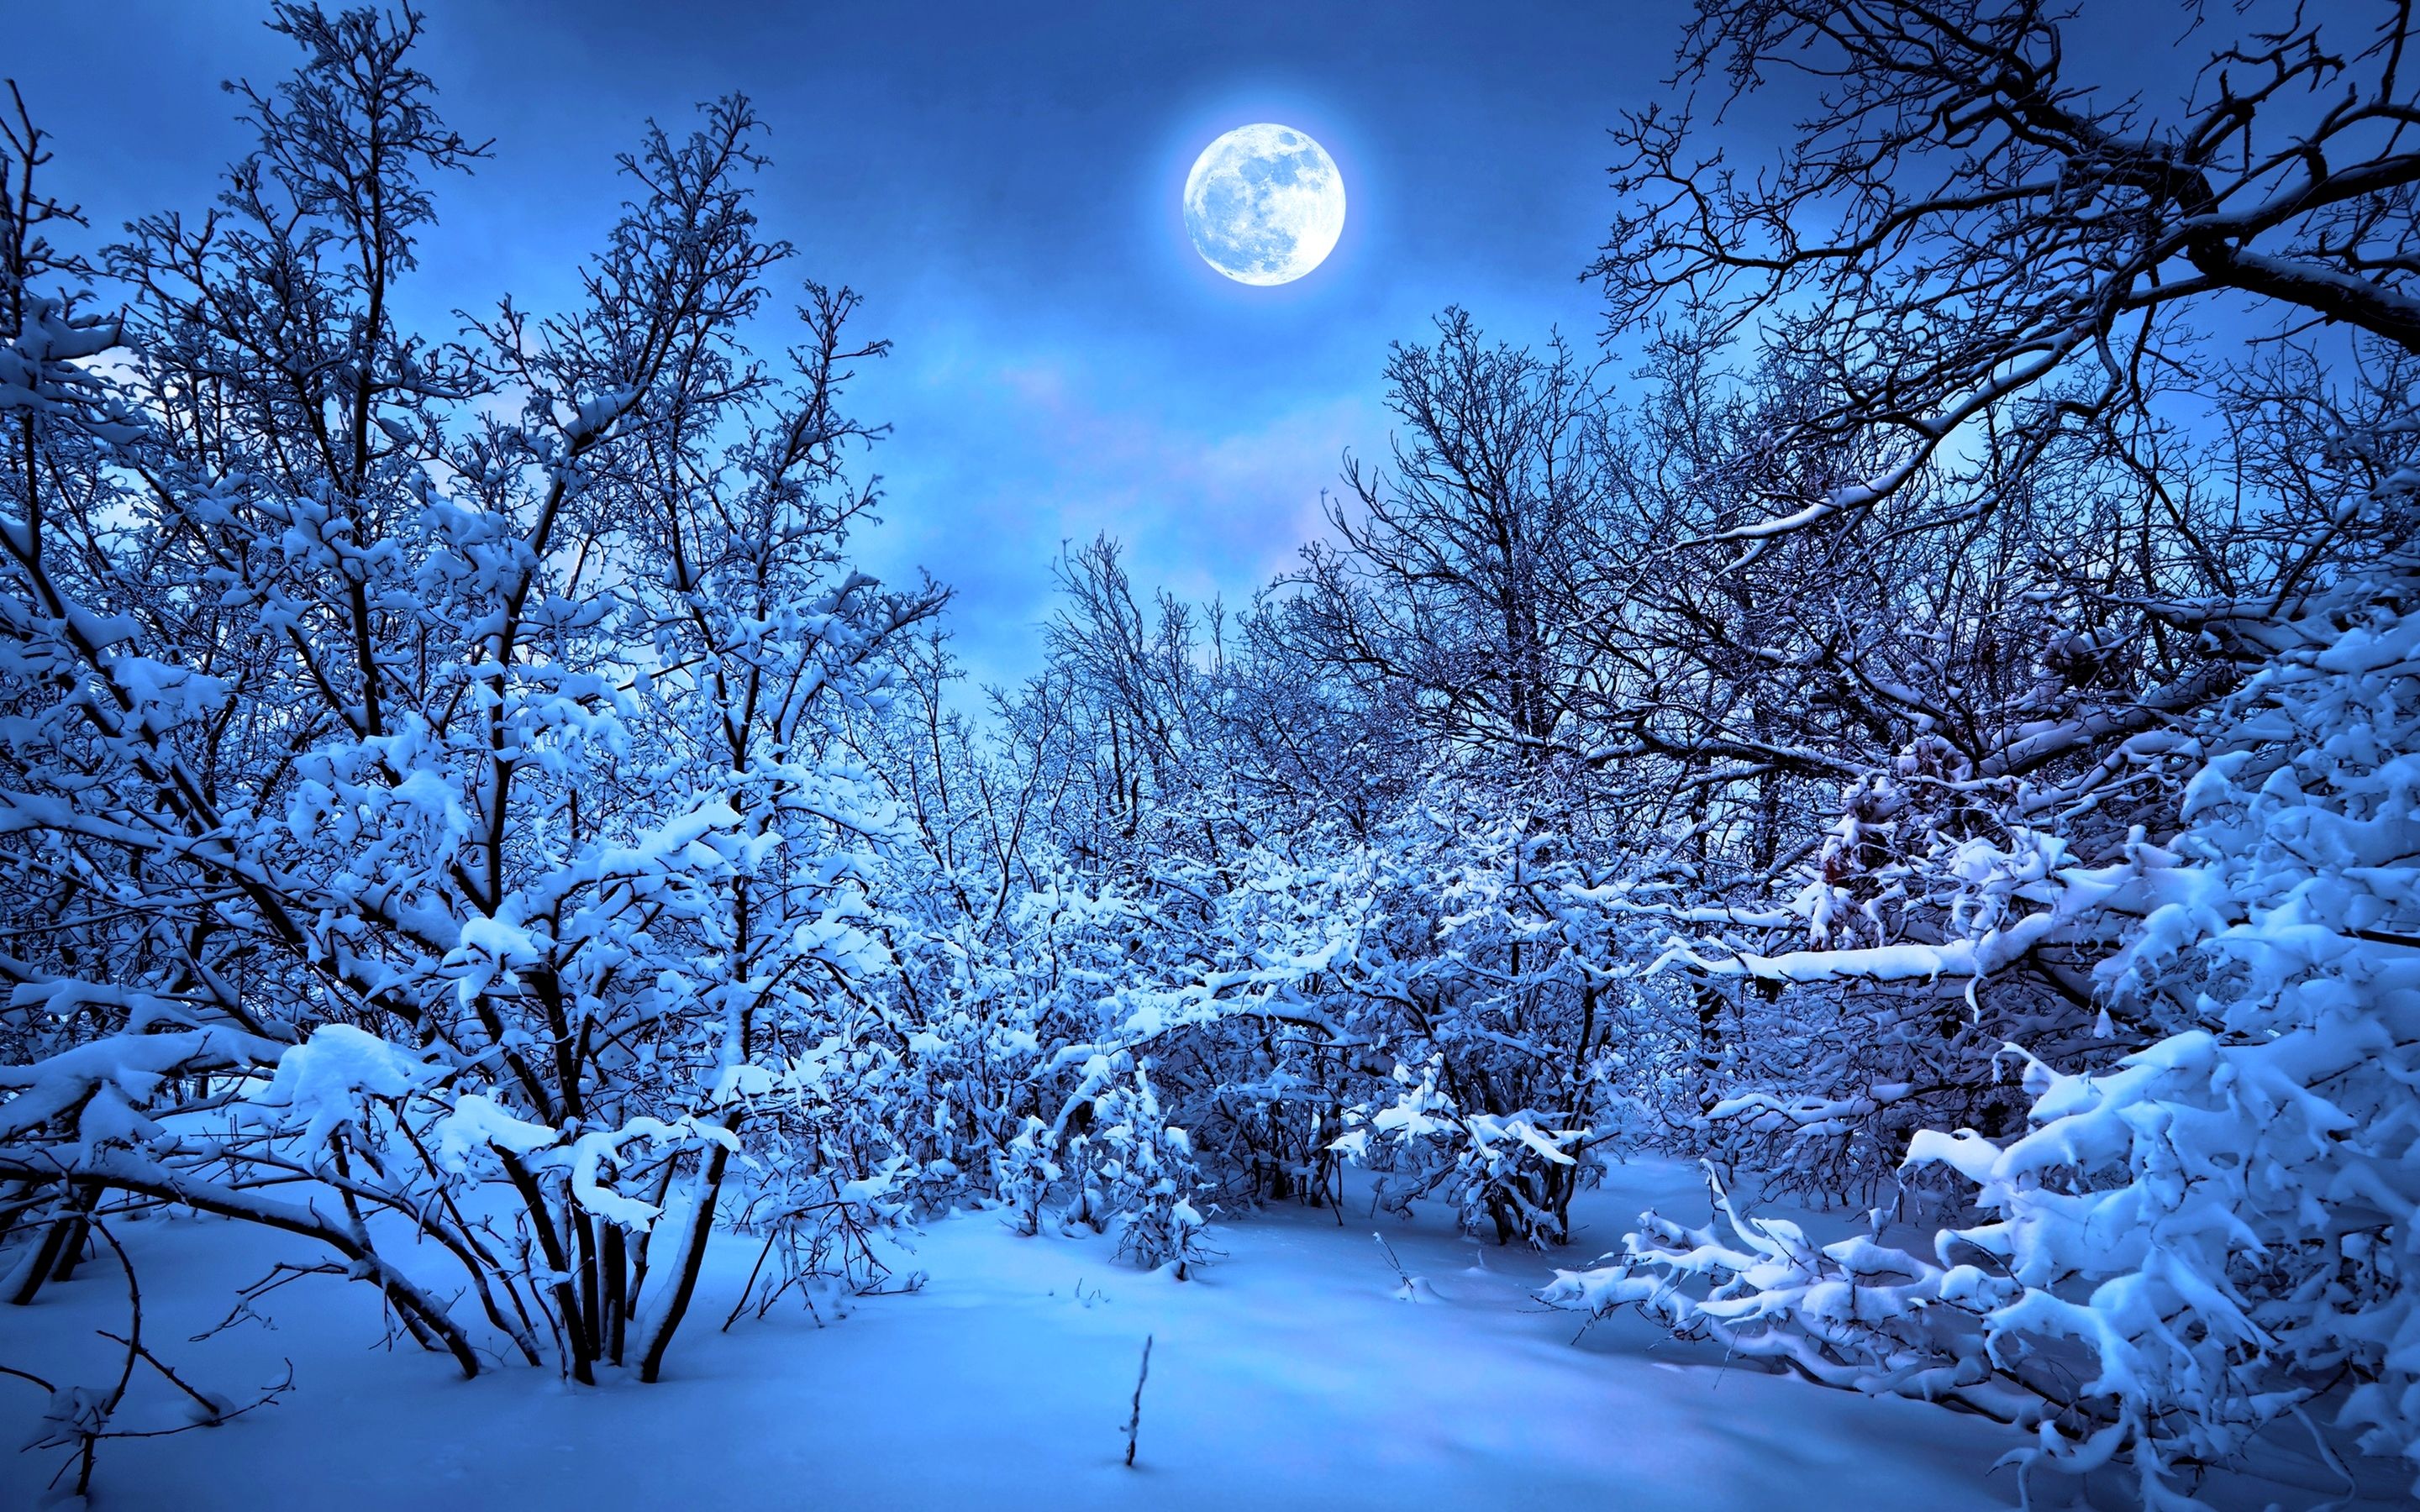 Macbook Wallpaper 4K Nature Ideas. Winter moon, Snow forest, Winter wallpaper